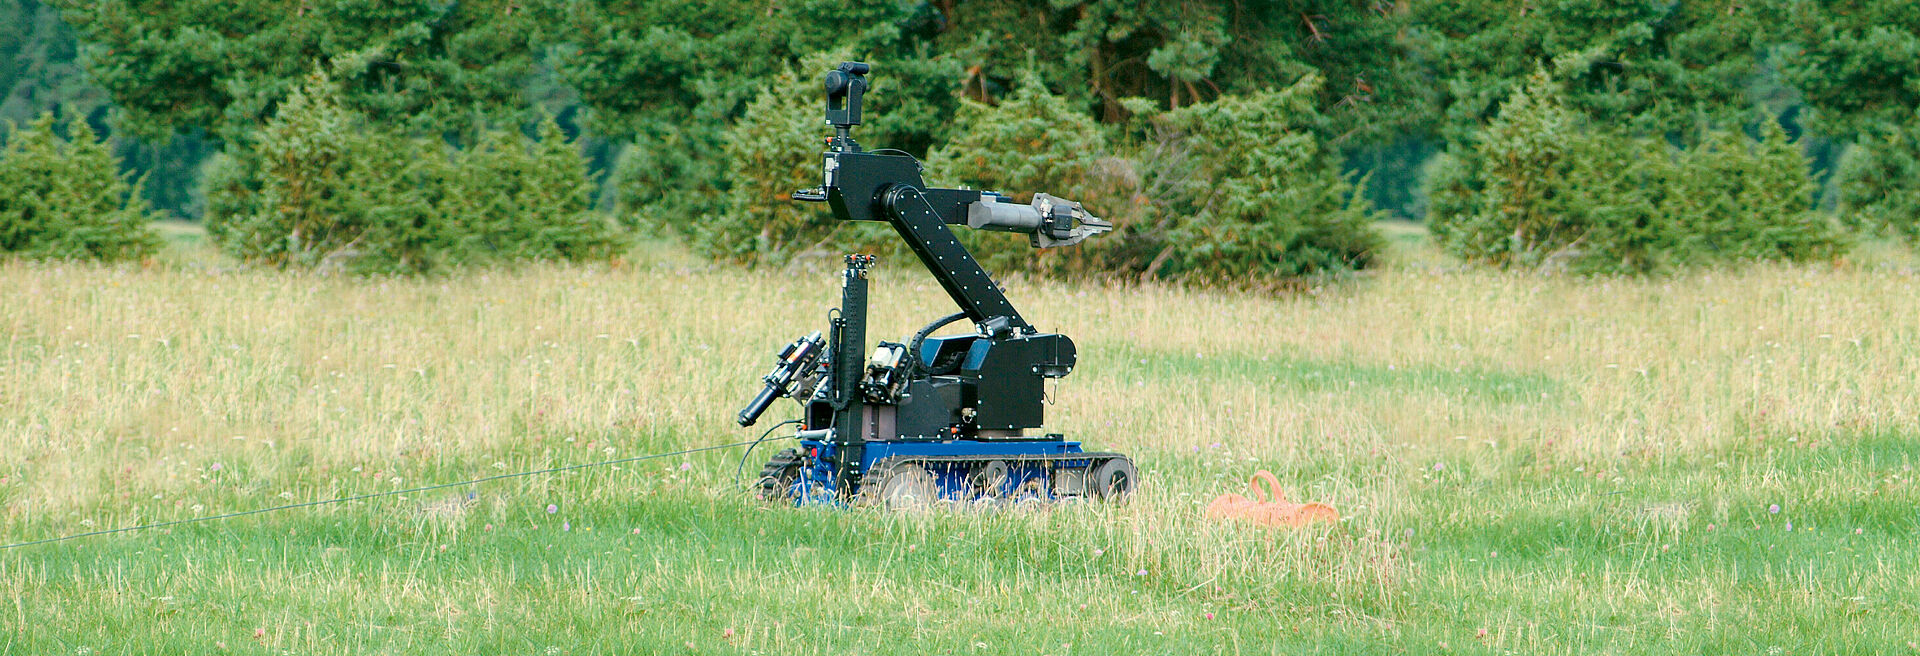 Moteurs cc dans robot mobile tout-terrain sur chenilles